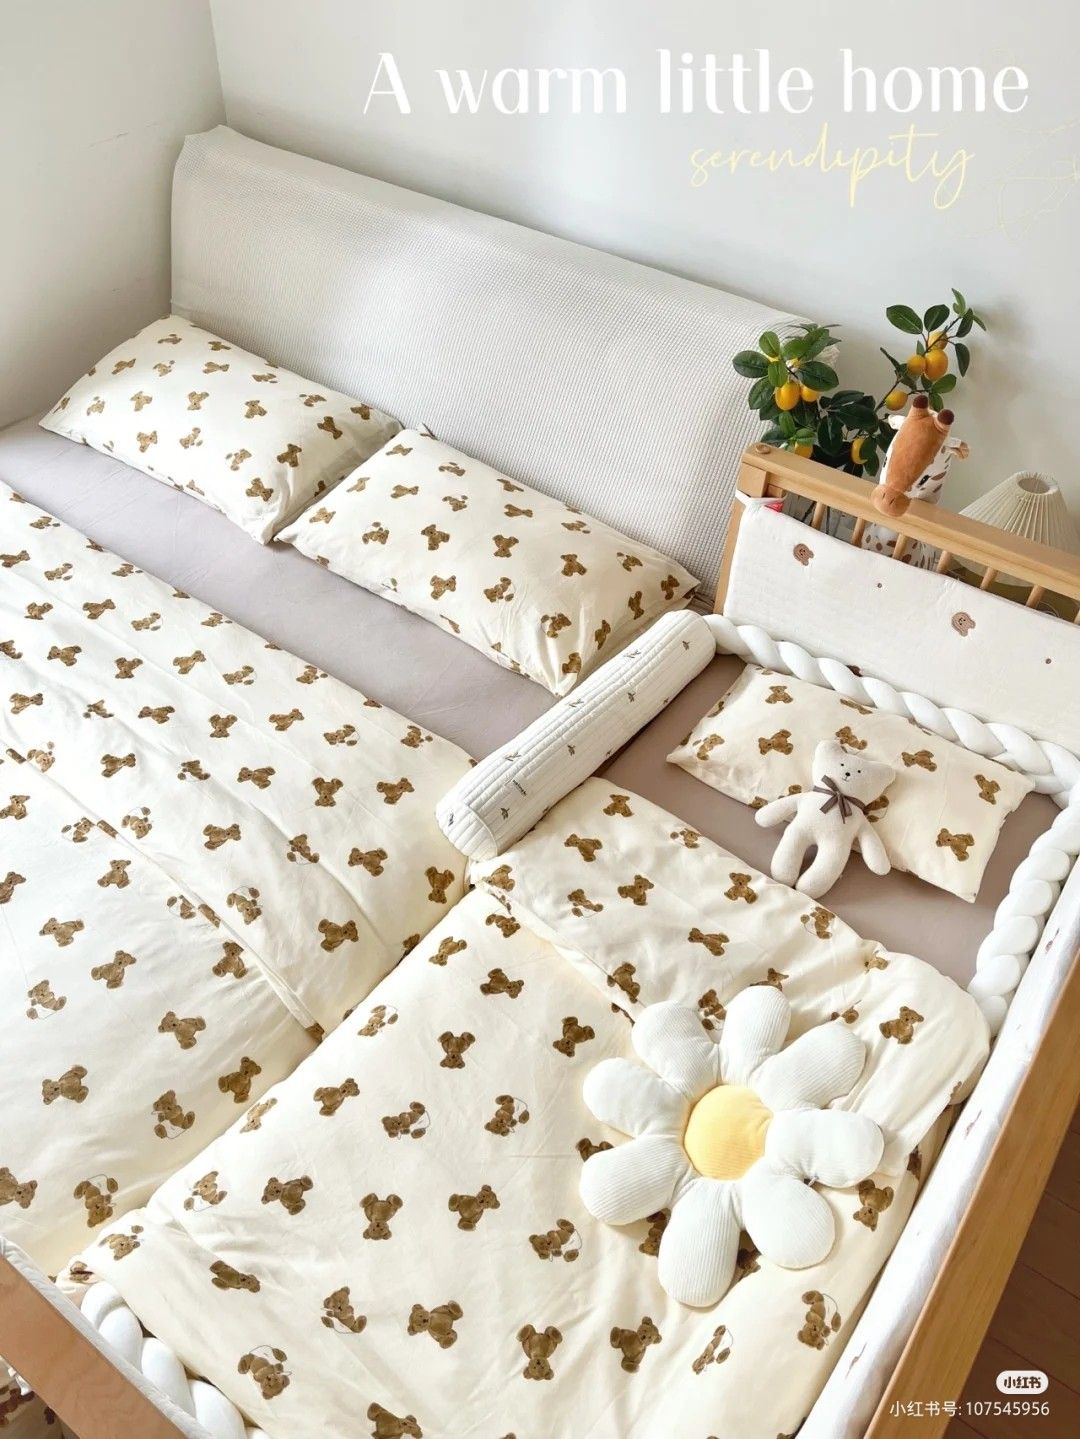 Giường phụ kê sát giường chính trong thiết kế phòng ngủ chung cho bố mẹ và con